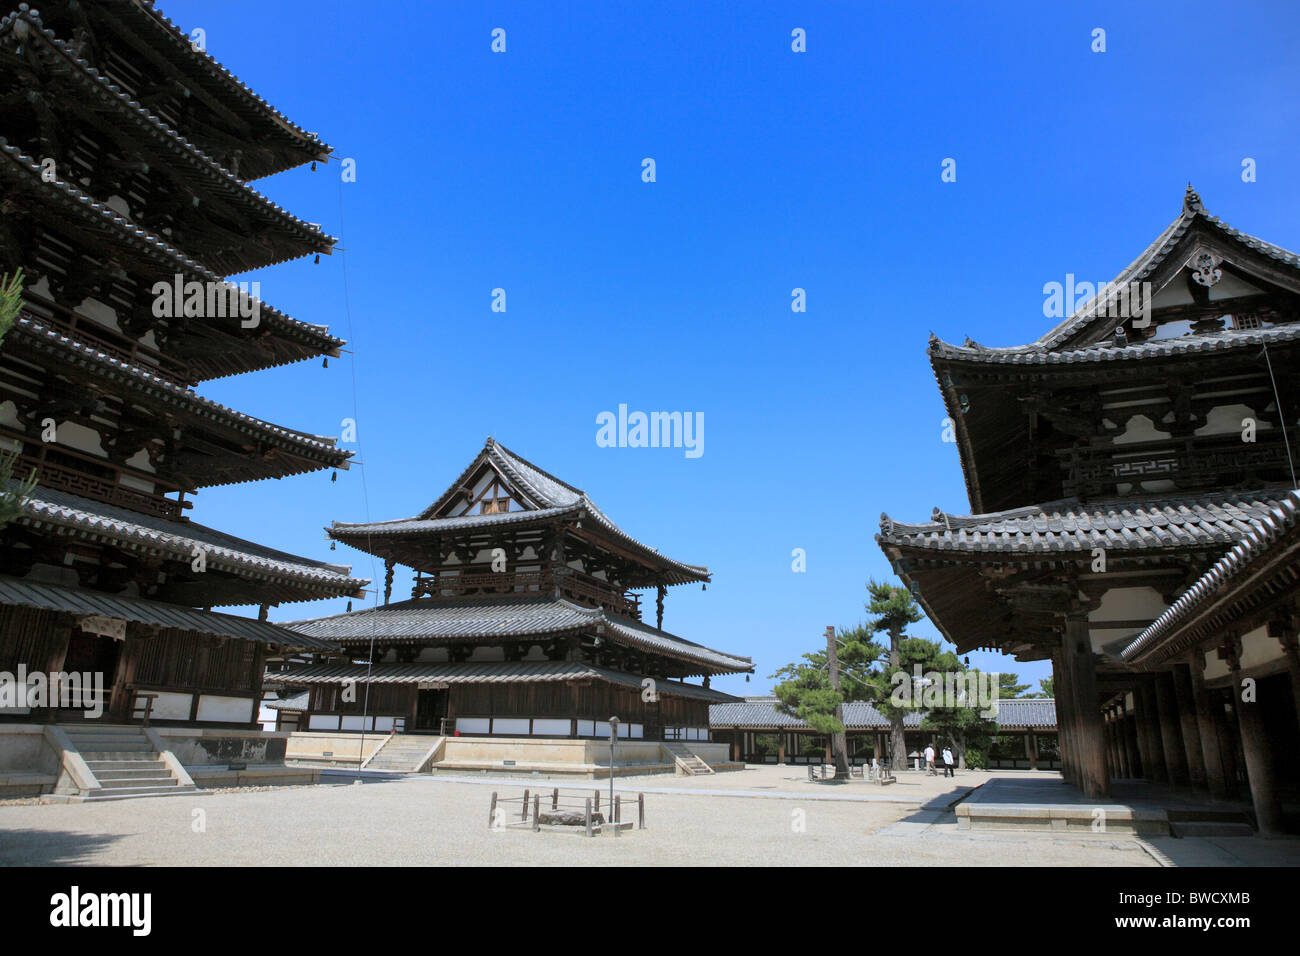 Horyuji monastery, Sain with pagoda (693), kondo (700), Horyu-ji, Ikaruga (near Nara), Japan Stock Photo